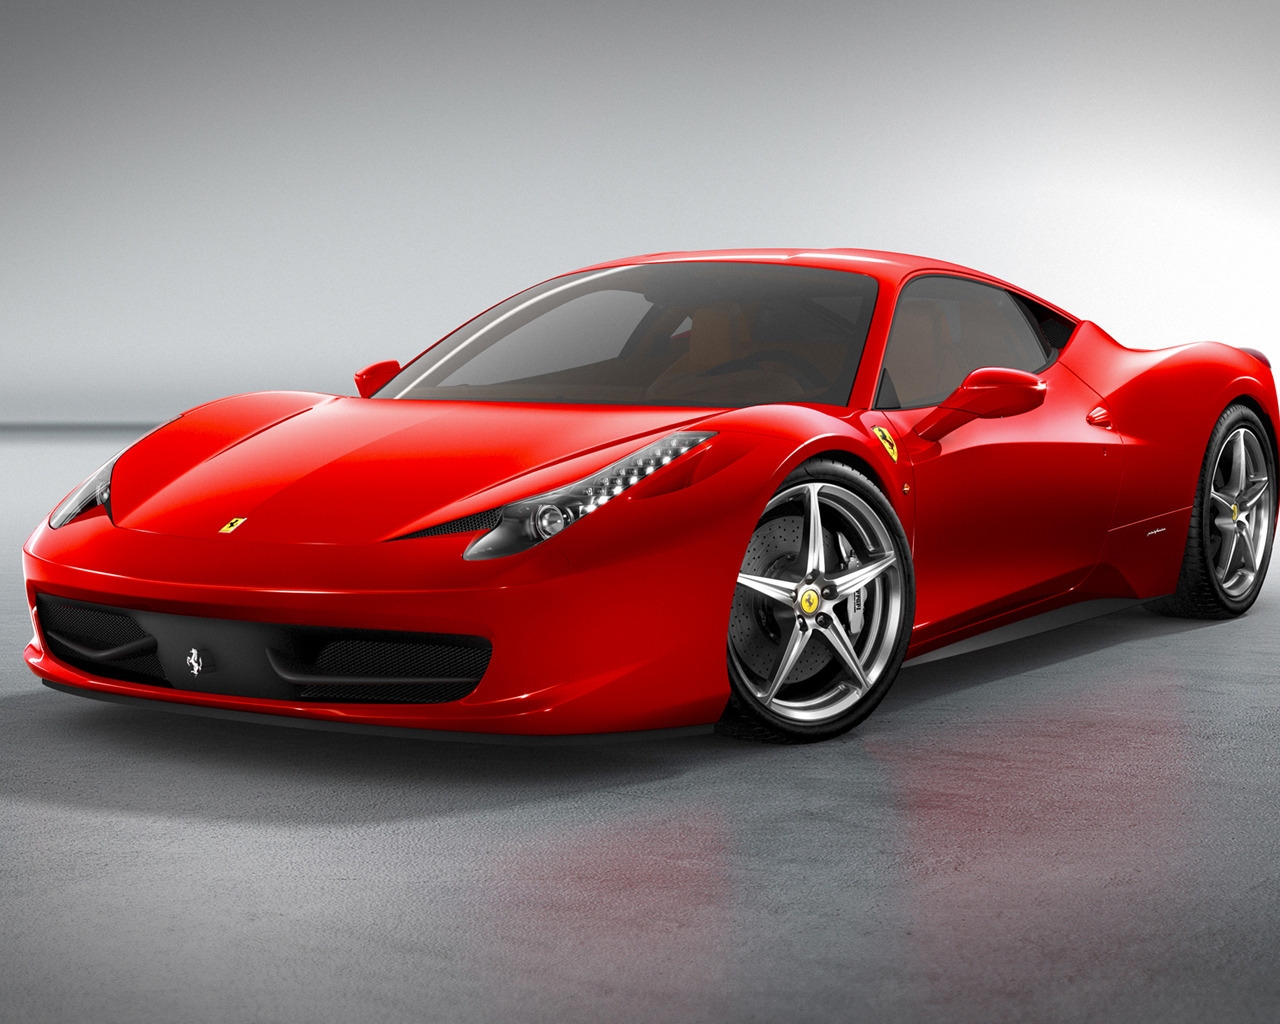 Ferrari 458 Italia Front for 1280 x 1024 resolution